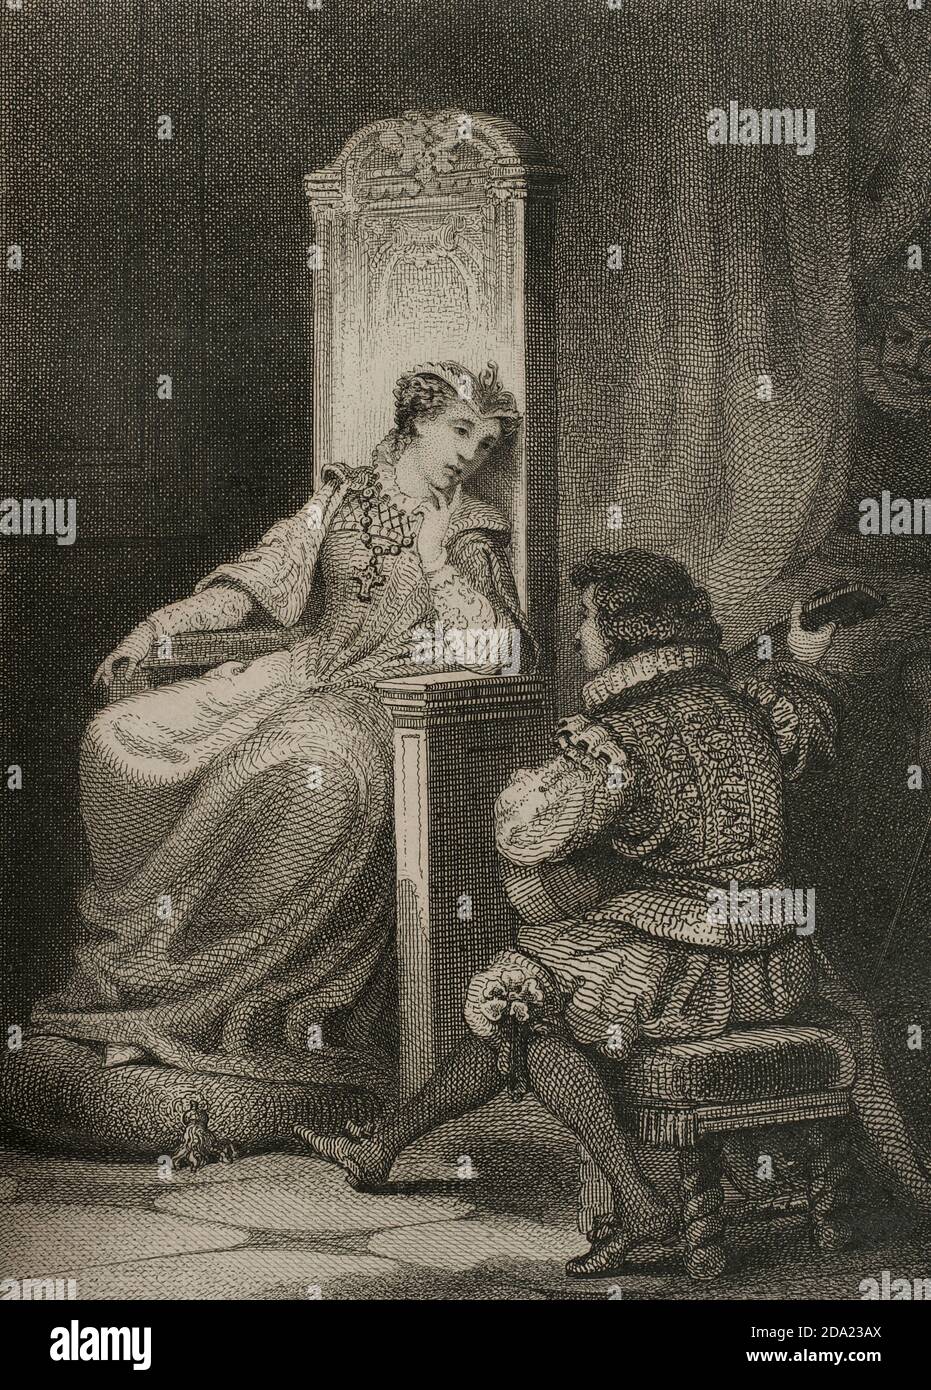 Maria Estuardo. Maria I de Escocia (1542-1587). Reina de Escocia (1542-1567). Hija de Jacobo V. Tras su matrimonio con Francisco II de Francia, ocupó a su lado el trono de Francia (1559). Estuvo dieciocho años prisionera y fué condenada a muerte por conspir contra la vida de la reina de Inglaterra. En febrero de 1587 la reina Isabel I de Inglaterra ordenó decapitar a María Estuardo, muriendo como una mártir católica. Grabado con una escena de David Rizzio (1533-1566), cortesano italiano secretario privado de María Estuardo, tocando la guitarra para la reina. Por J. Furtó. Historia de las per Banque D'Images